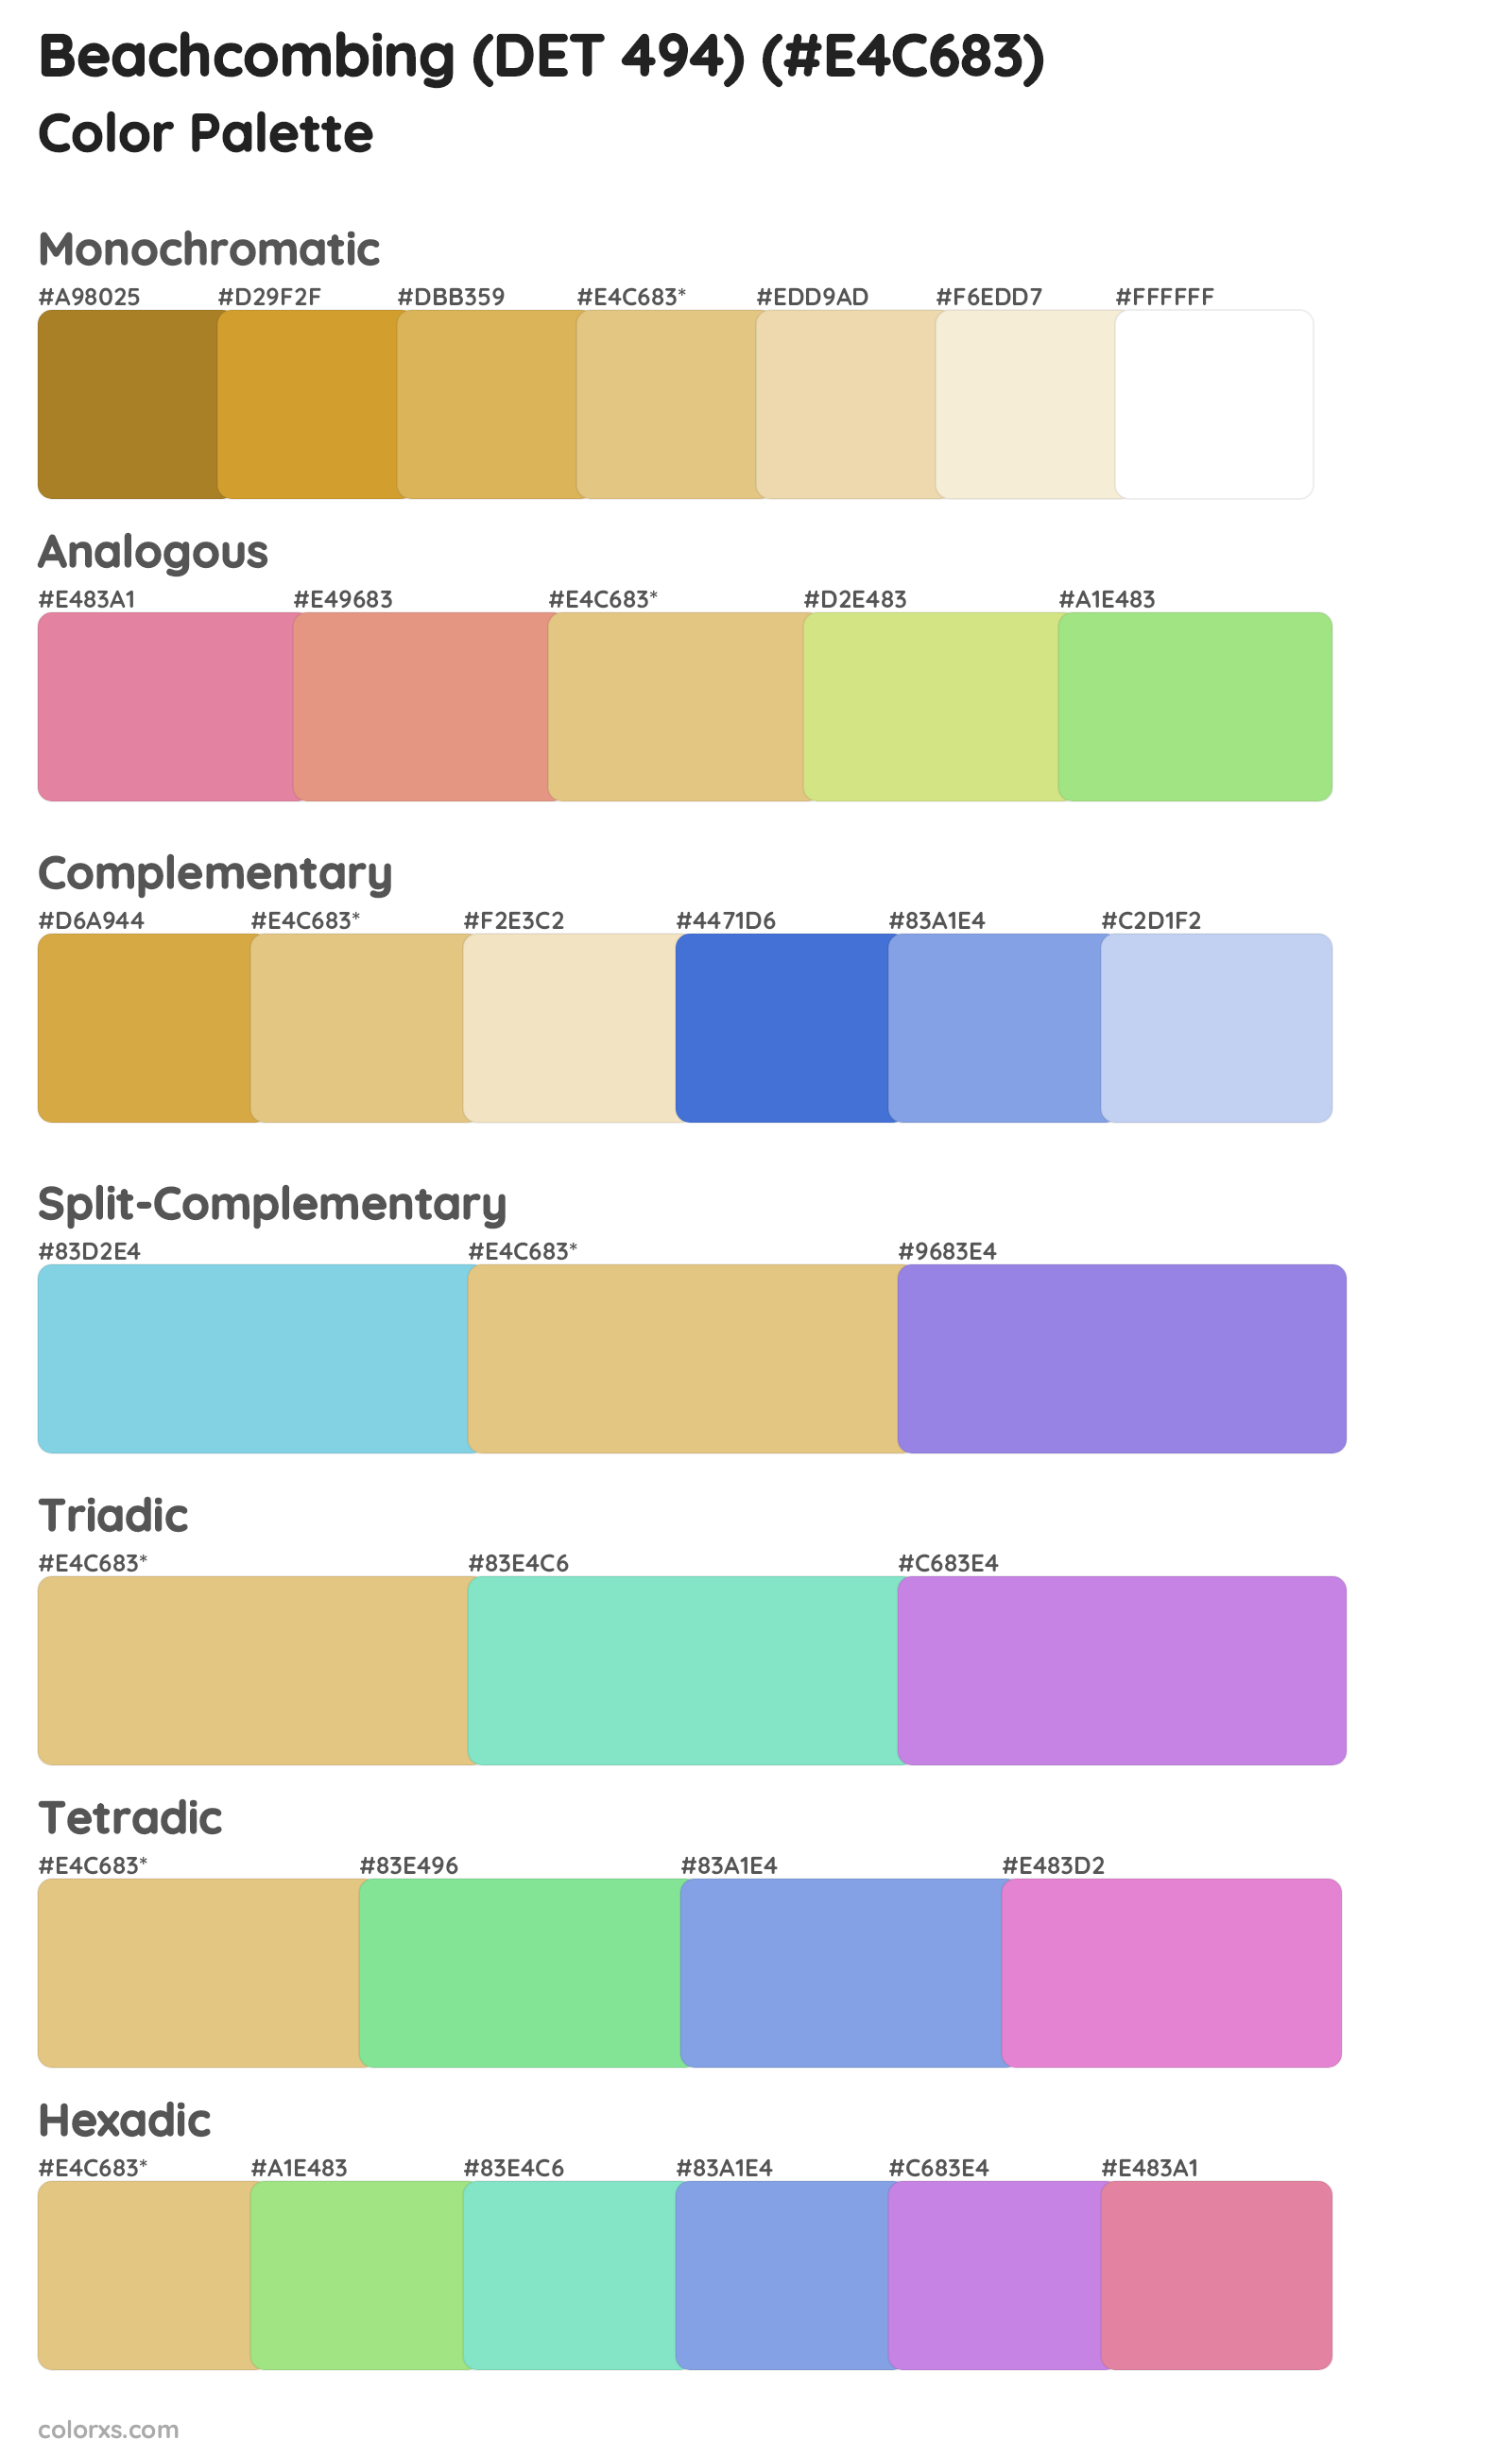 Beachcombing (DET 494) Color Scheme Palettes